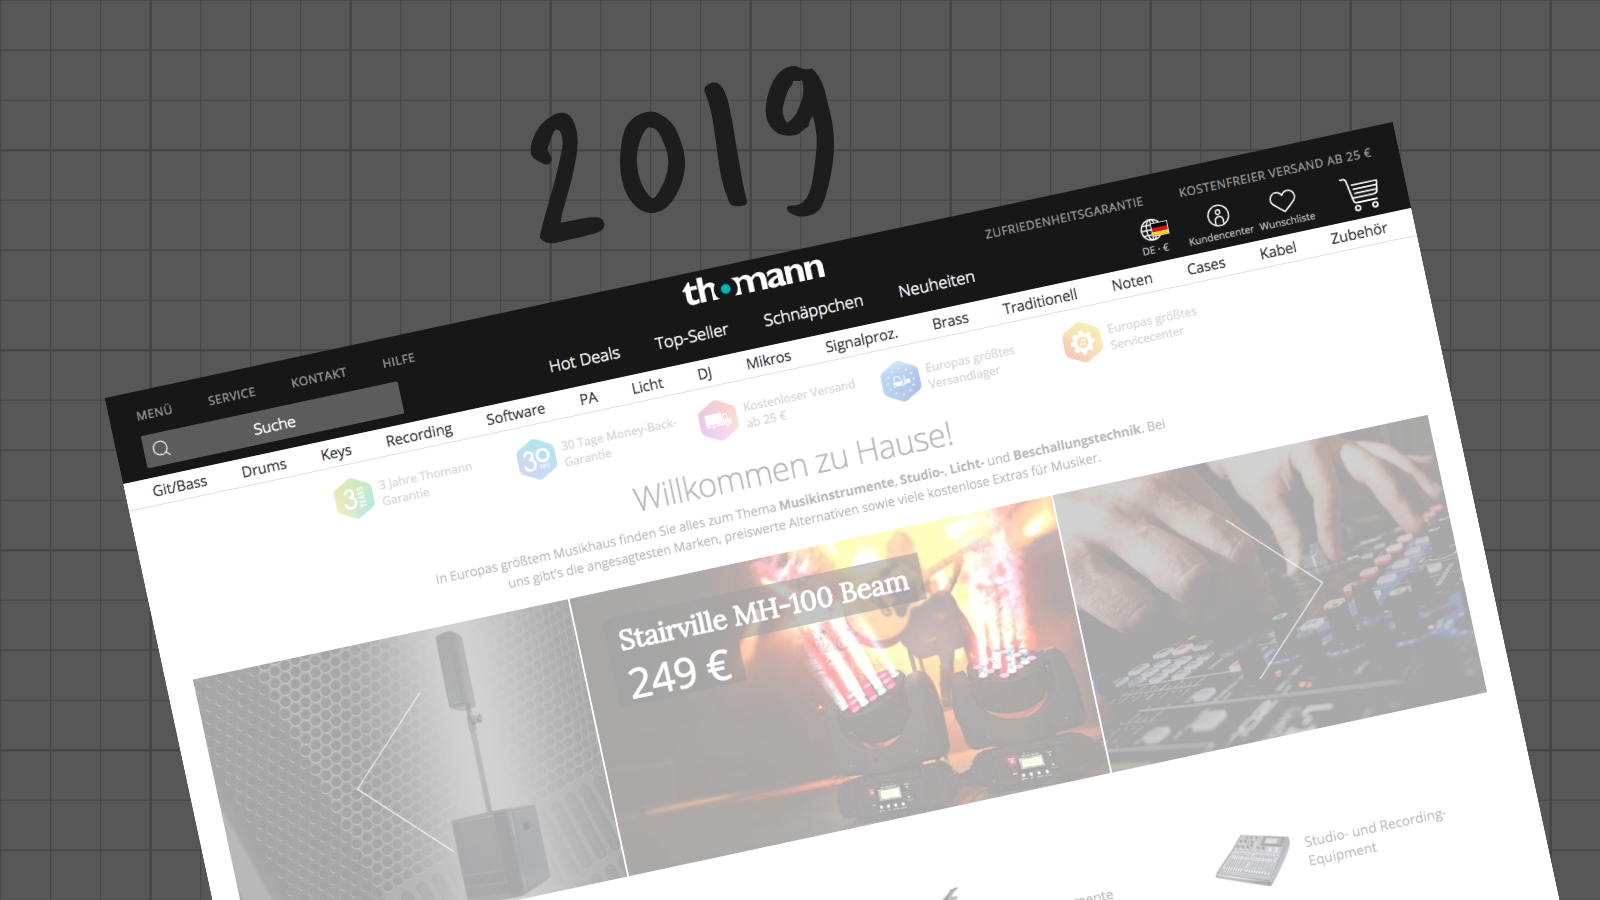 2019 Thomann website header